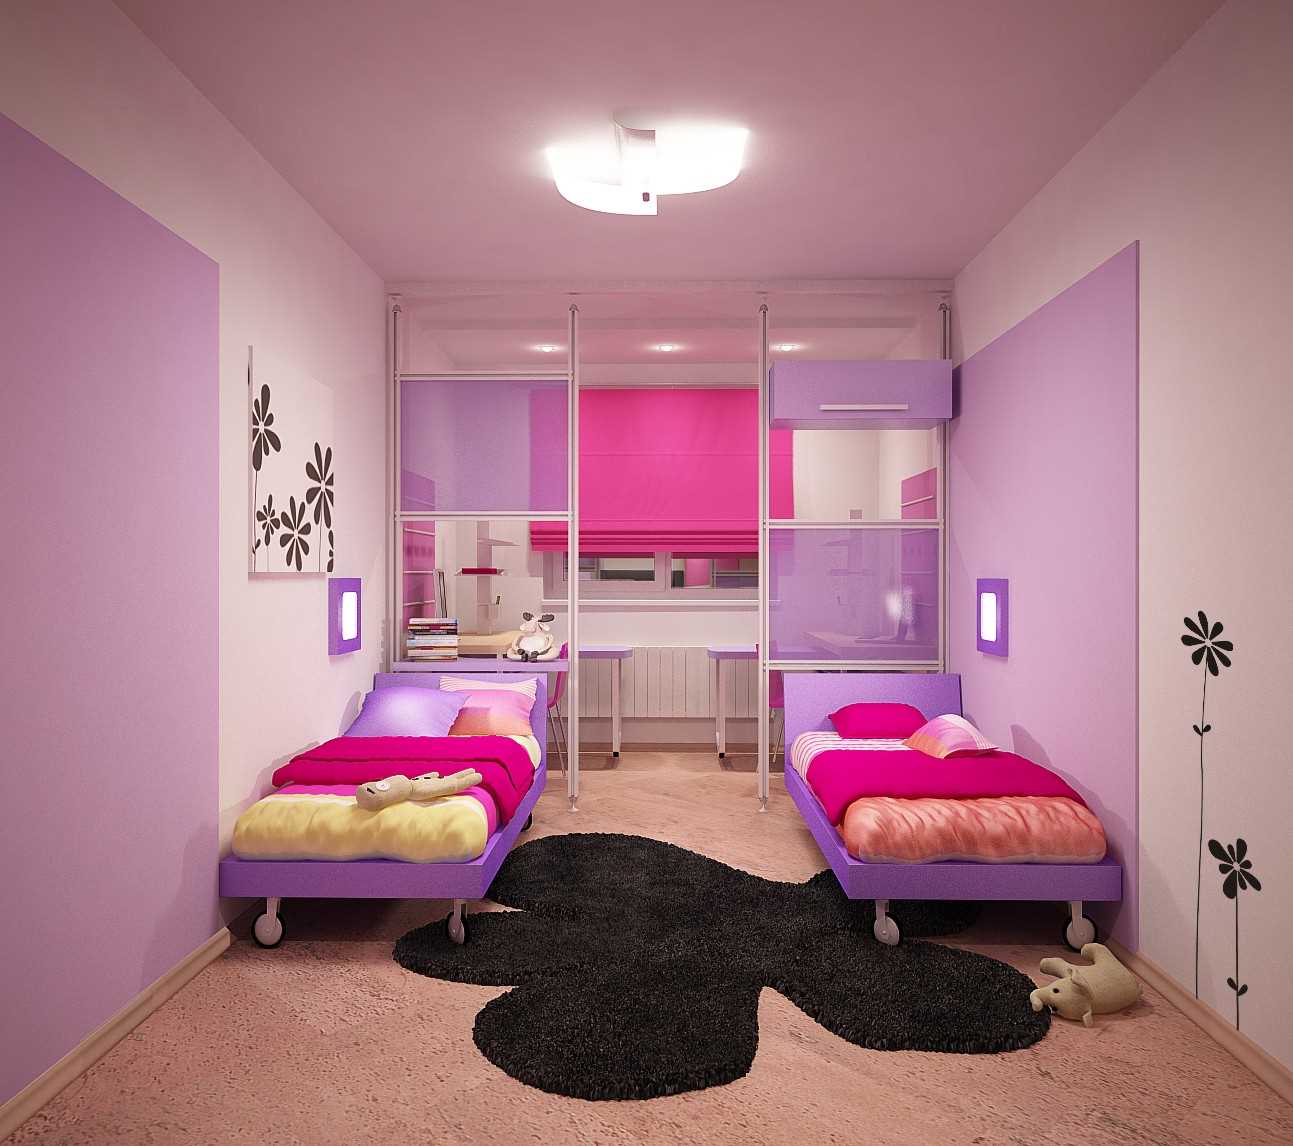 Un esempio di un design luminoso di una camera per bambini per due ragazze